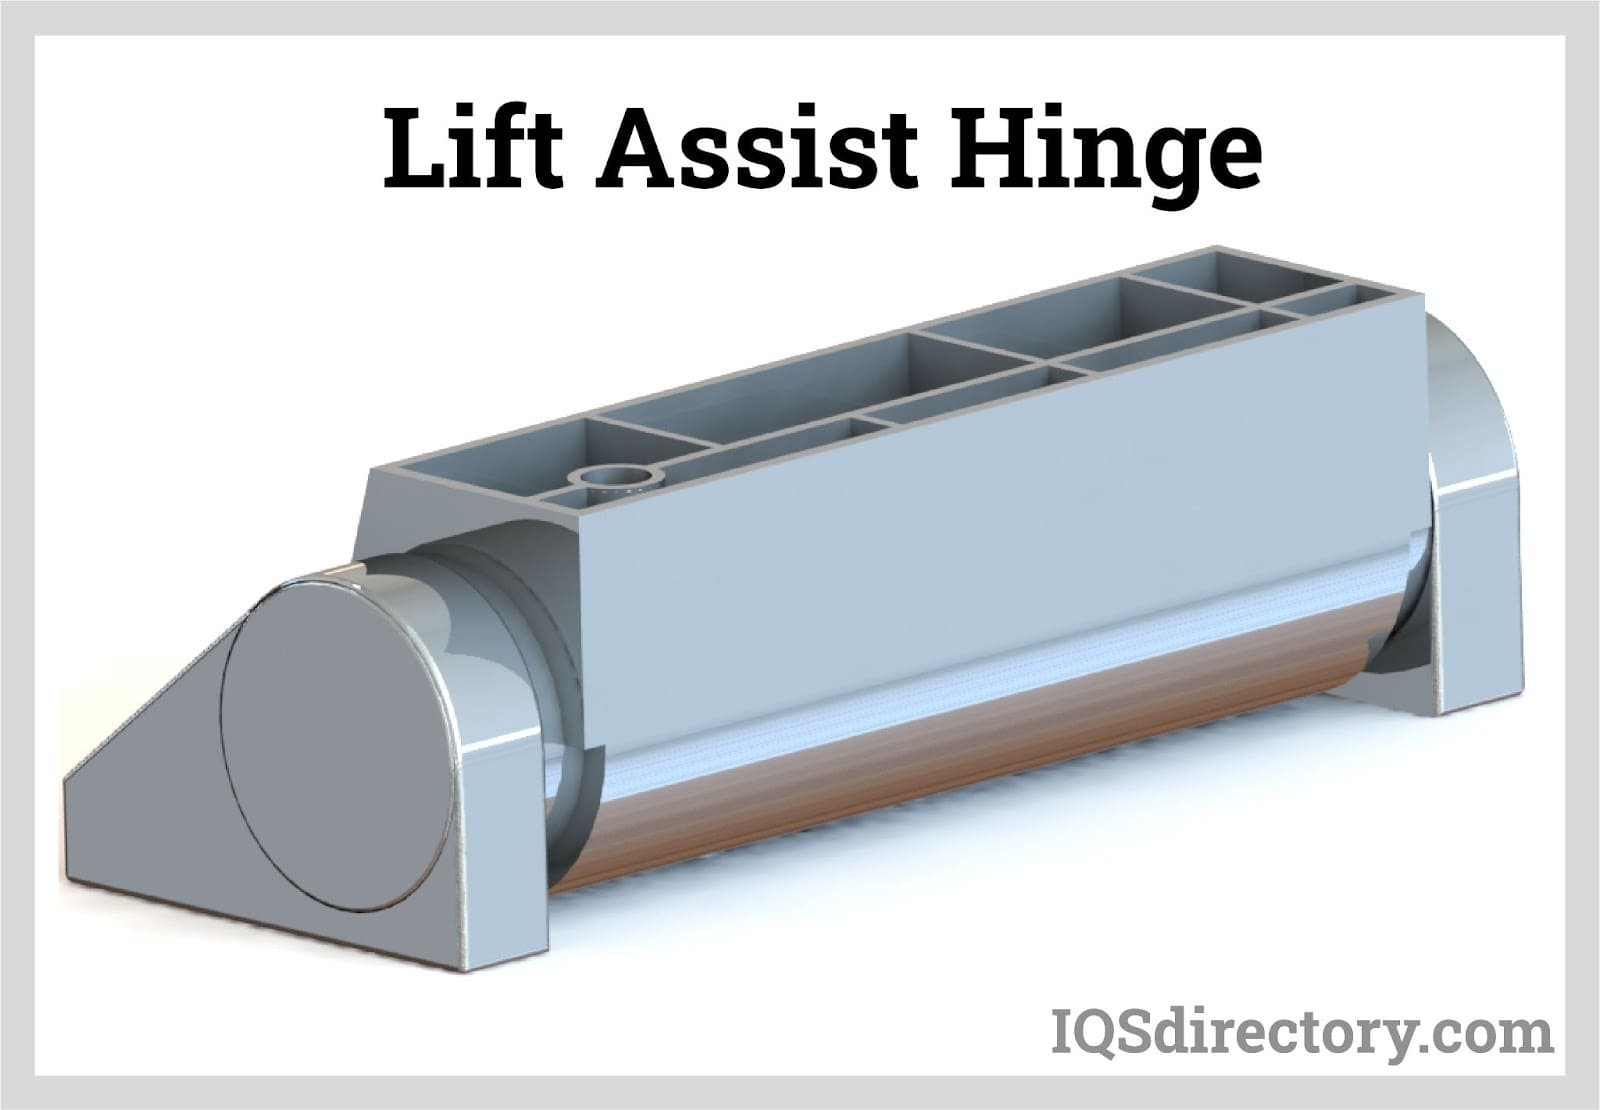 Lift Assist Hinge